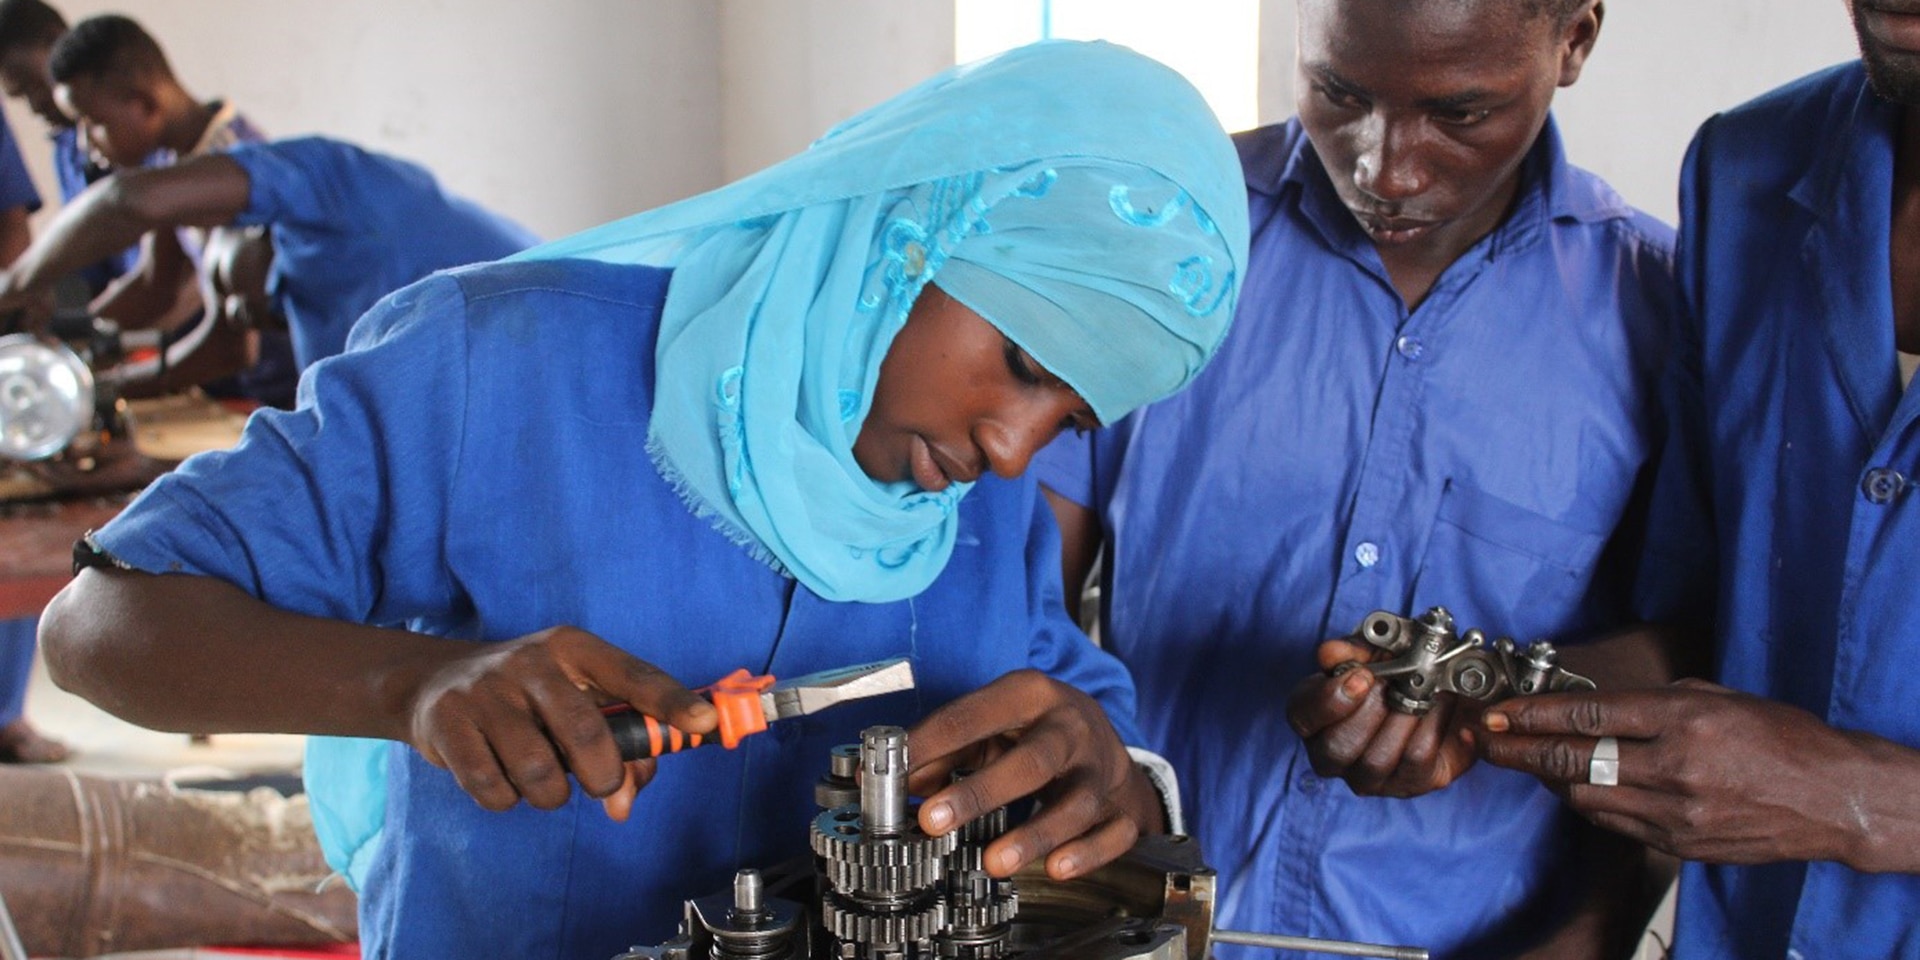 Mädchen mit Kopftuch arbeitet in einer Mechanikerlehrwerkstätte, zwei Jungs schauen zu.